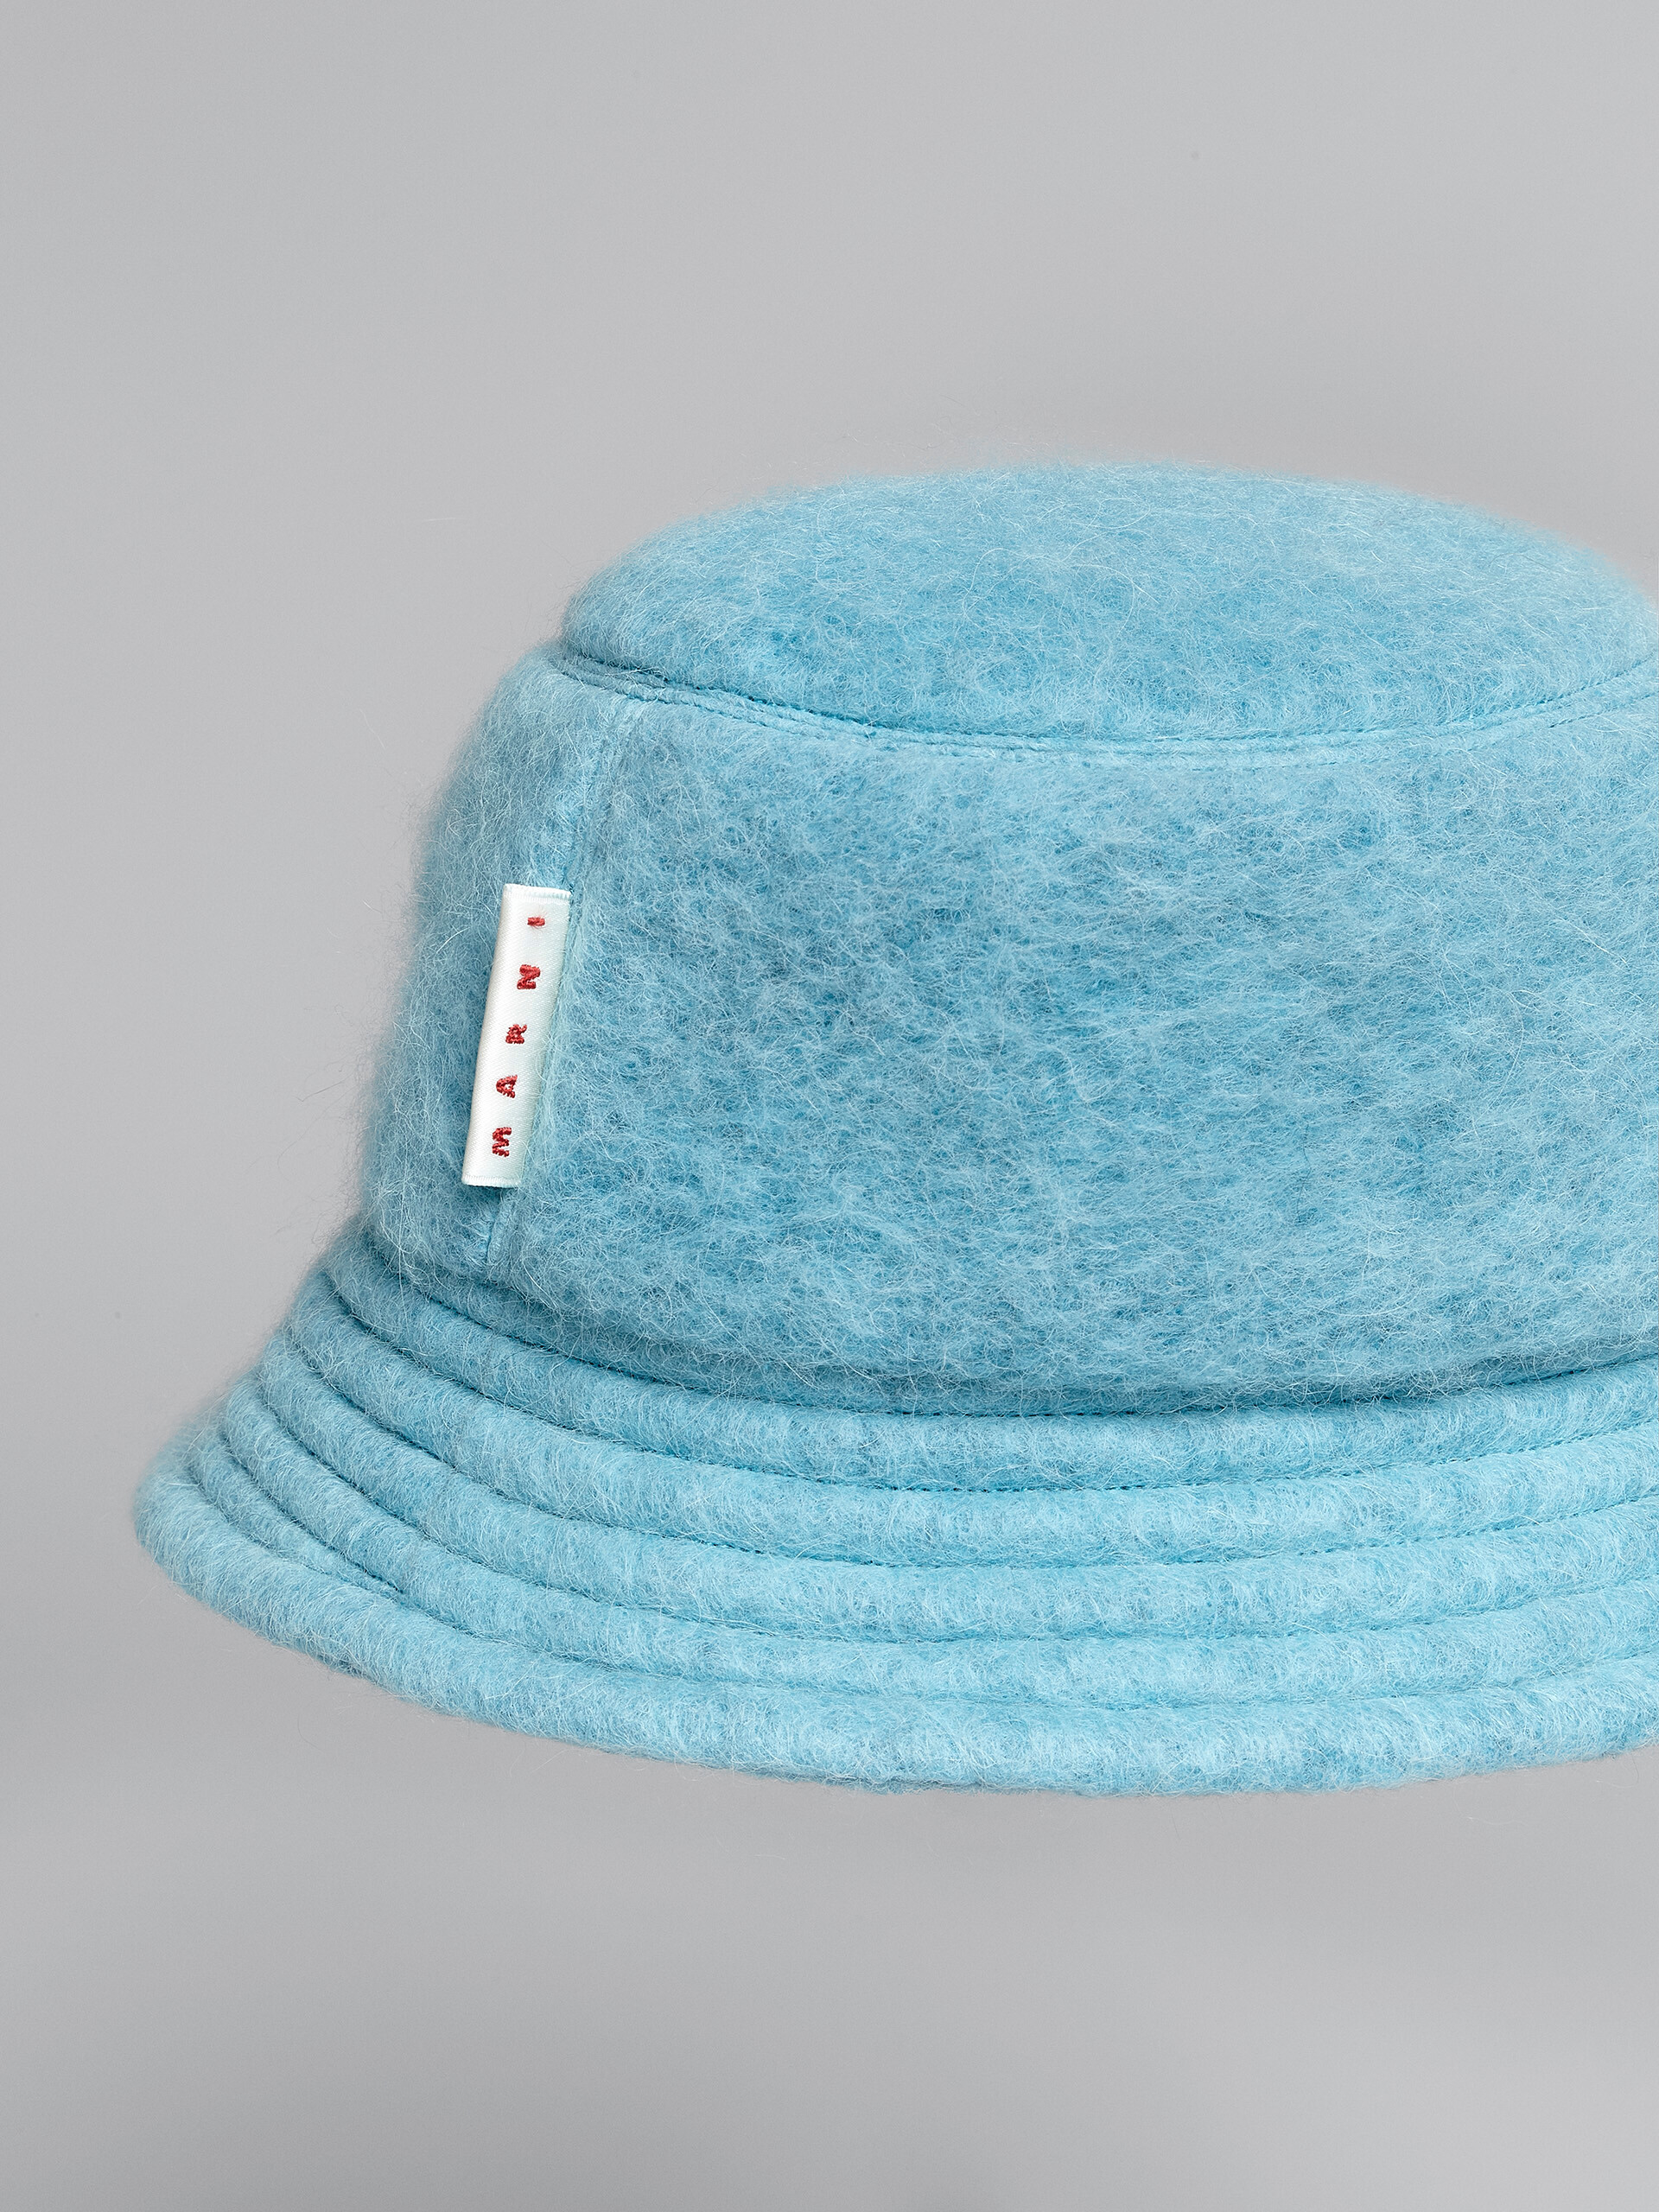 Himmelblauer Fischerhut aus gebürsteter Wollmischung - Hüte - Image 4